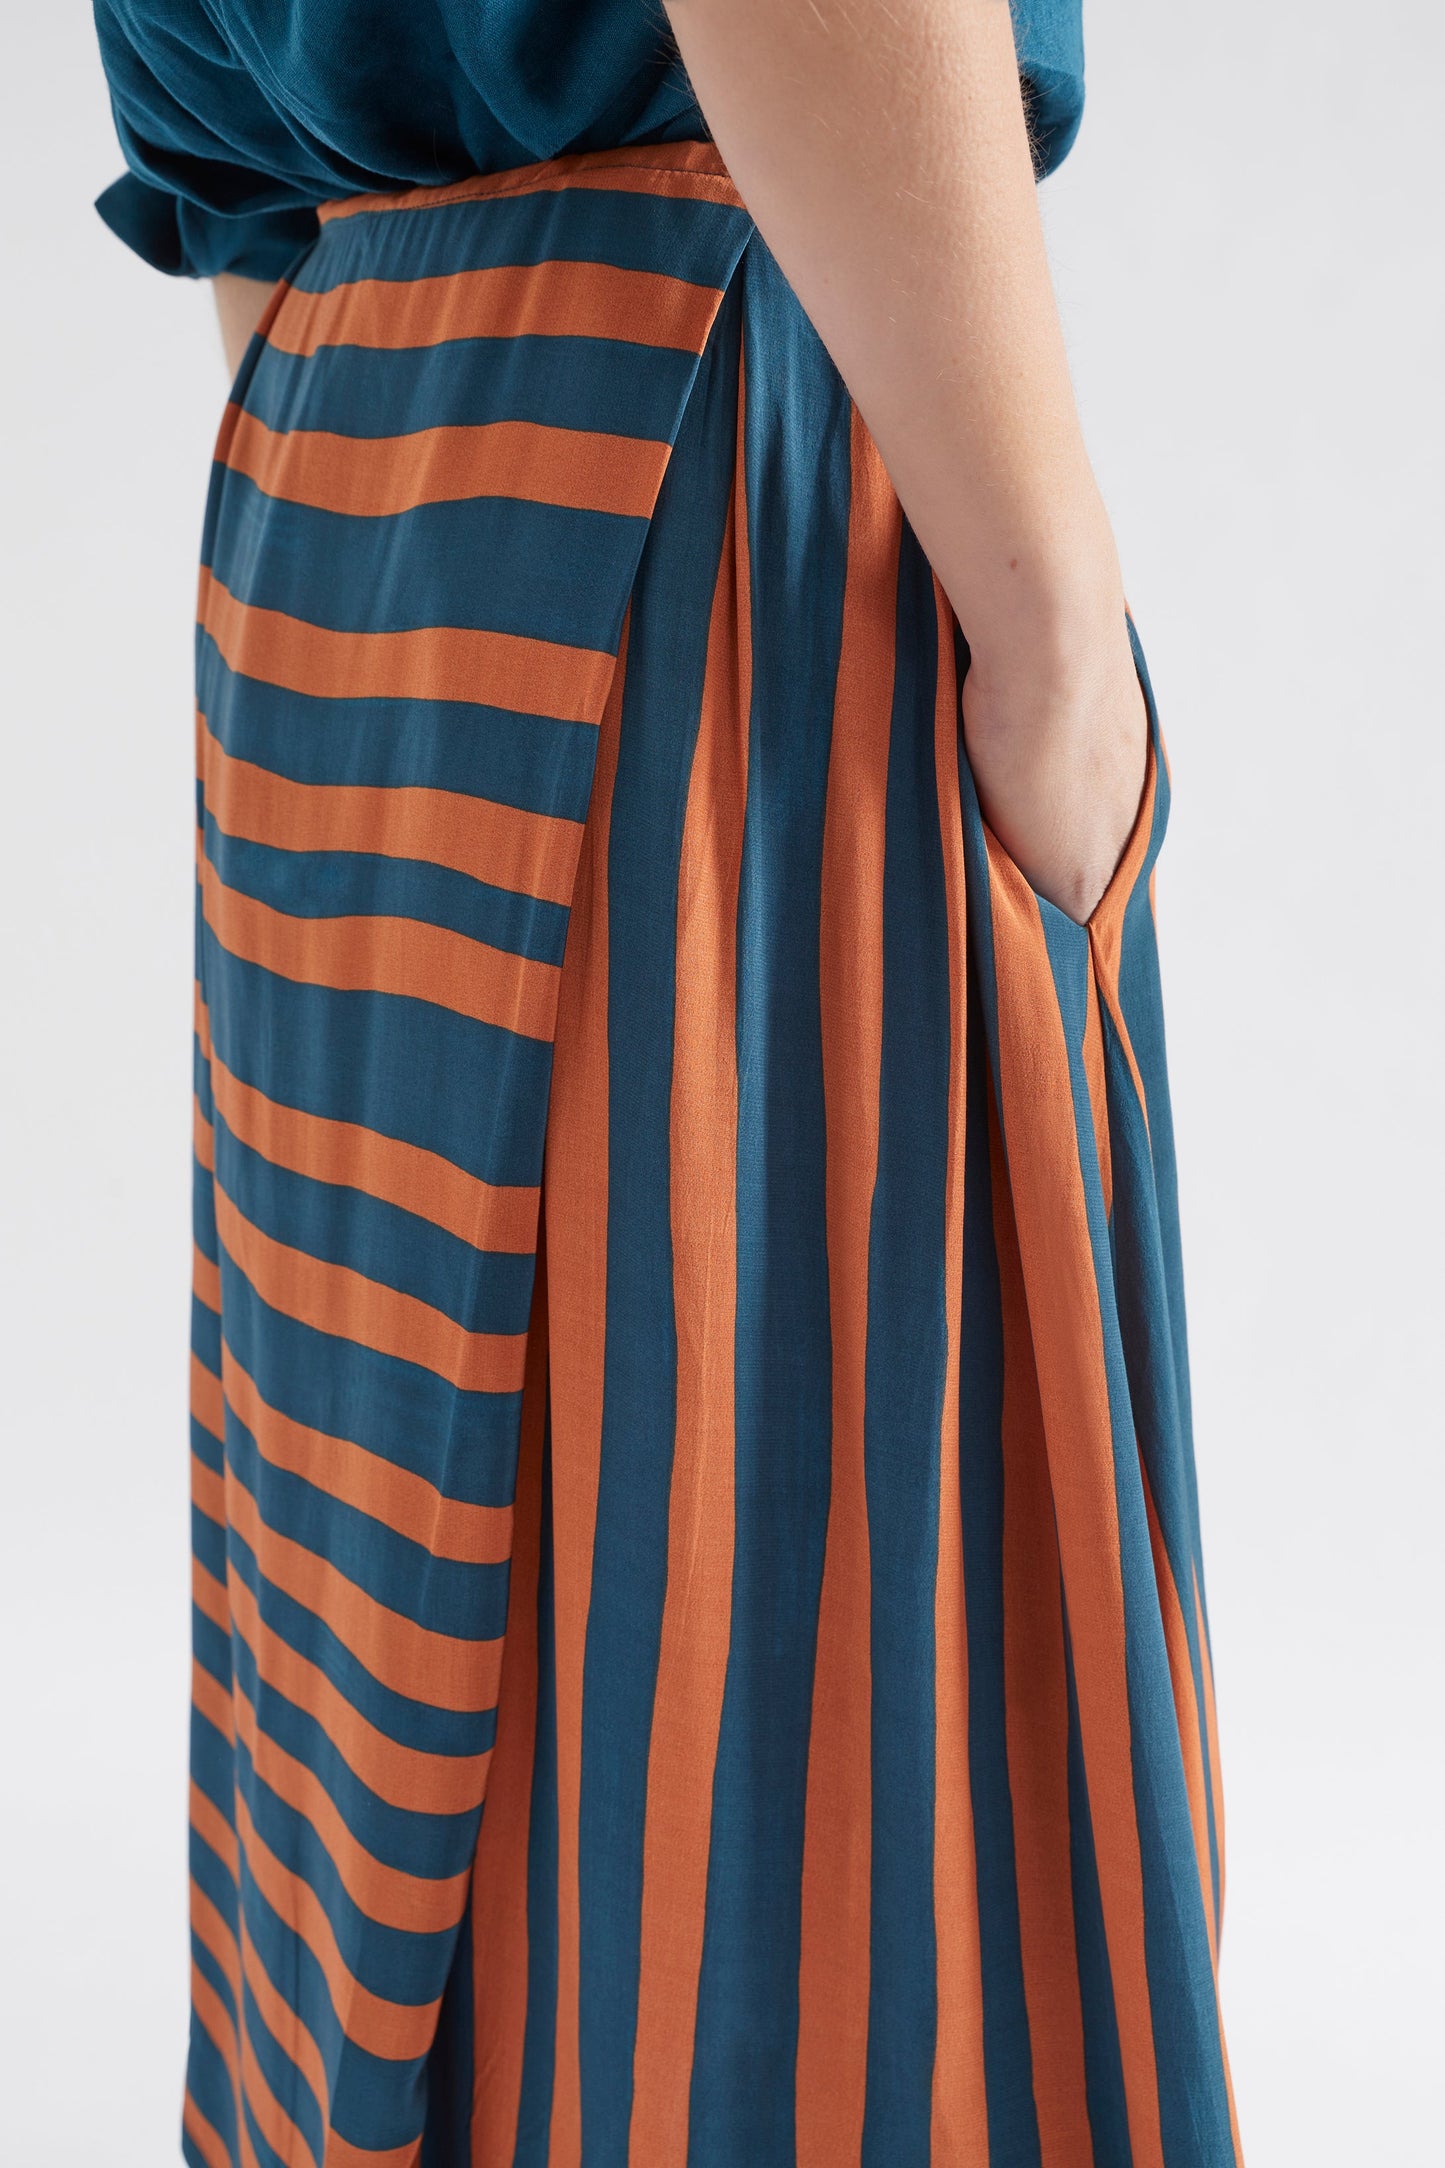 Tilbe Stripe Midi-Aline Drawstring Skirt Model Side detail | BRONZE TEAL PAINT STRIPE